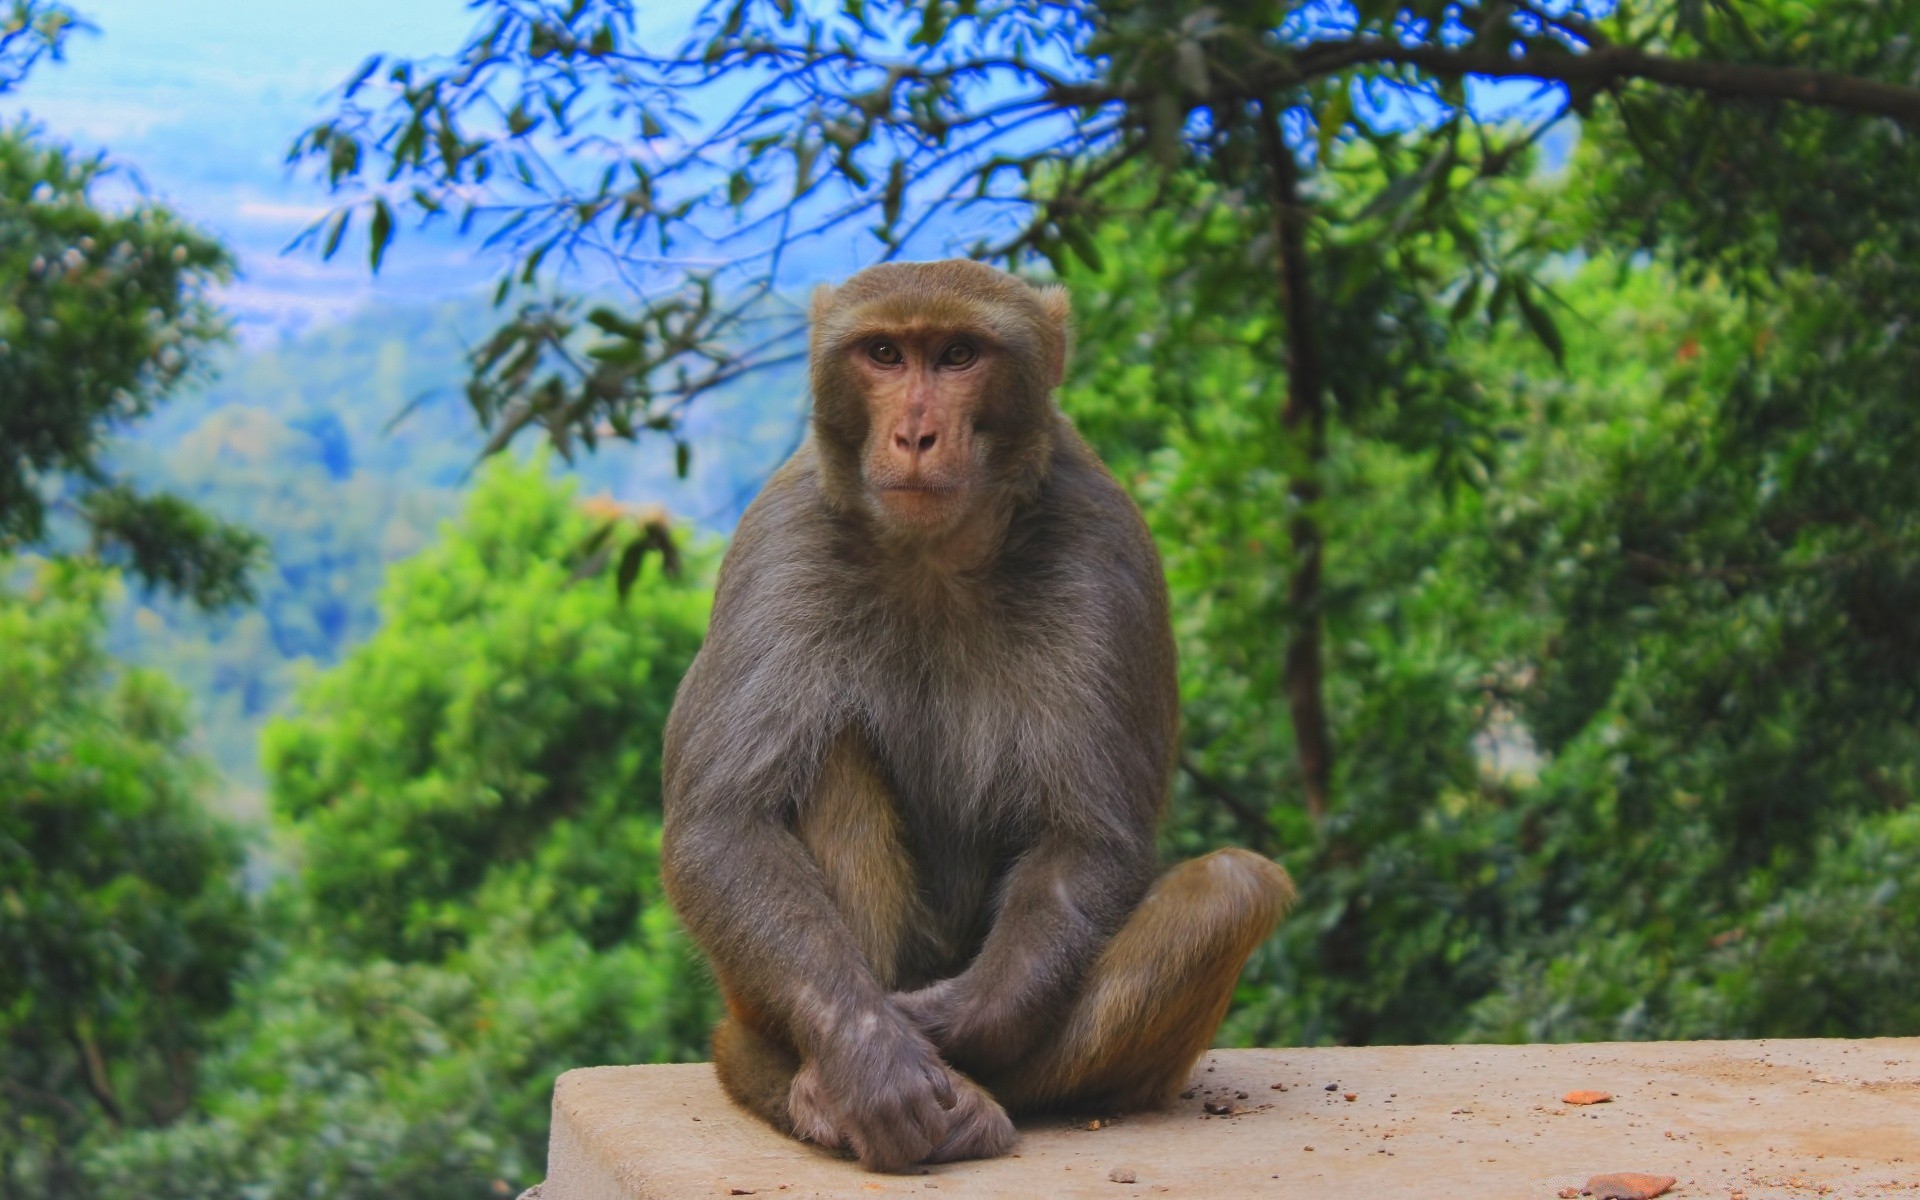 животные обезьяна предстоятель млекопитающее кривляться древесины макаки природа джунгли дикой природы сидеть дерево путешествия дикий зоопарк парк на открытом воздухе